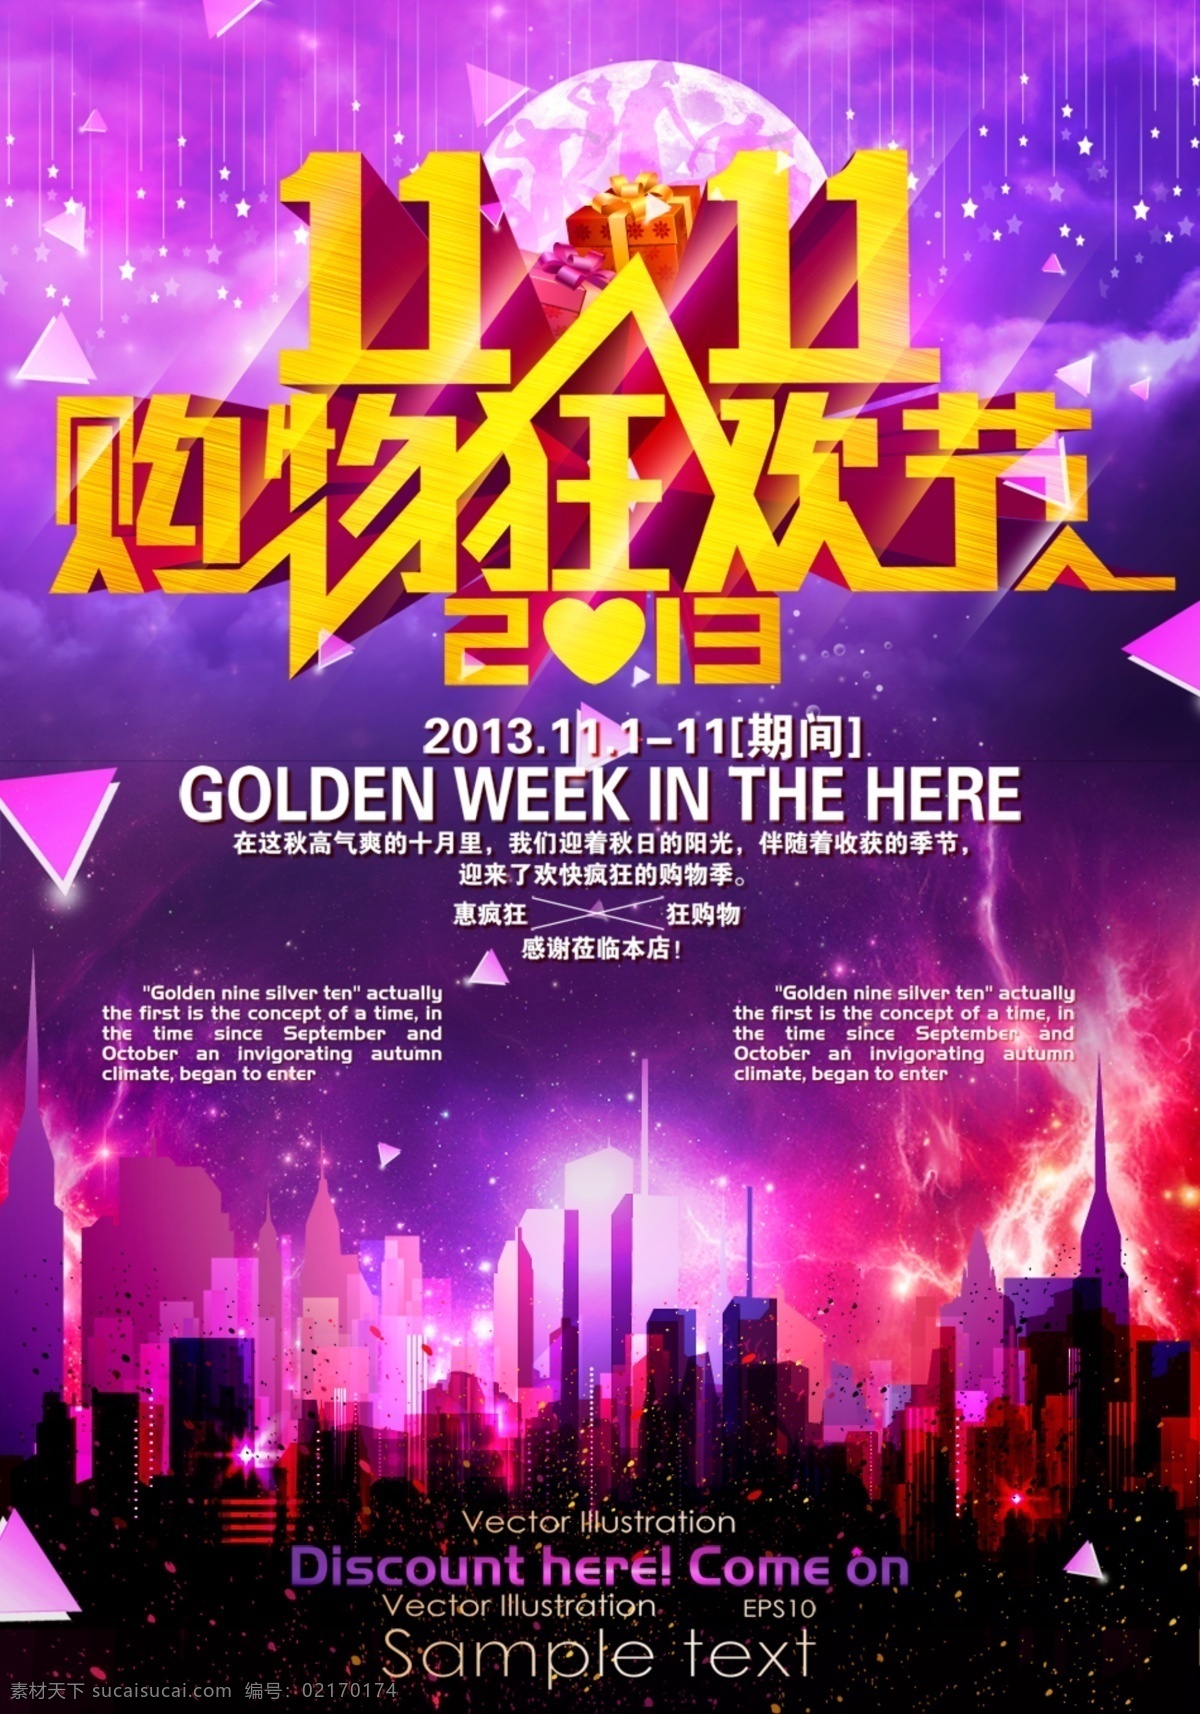 狂欢节 双11 网购节 活动 海报下载 海报 价格表 紫色